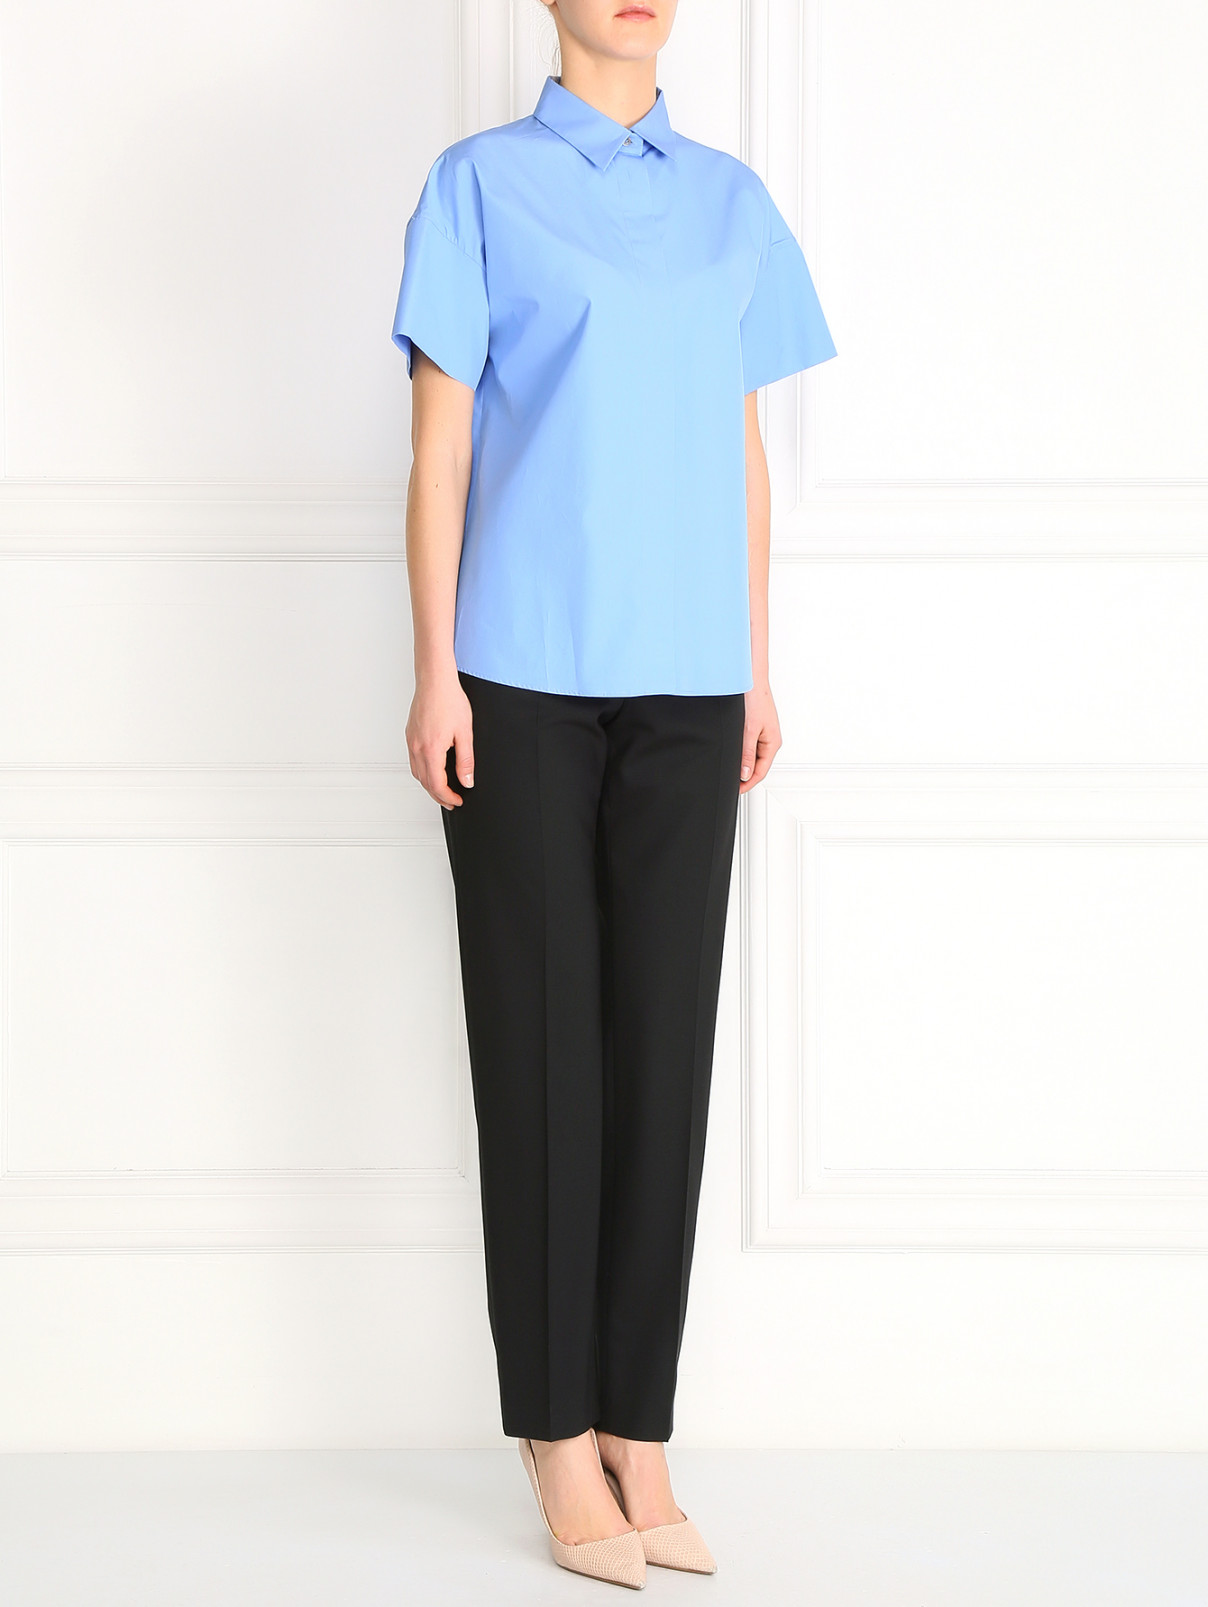 Рубашка из хлопка с короткими рукавами Jil Sander  –  Модель Общий вид  – Цвет:  Синий